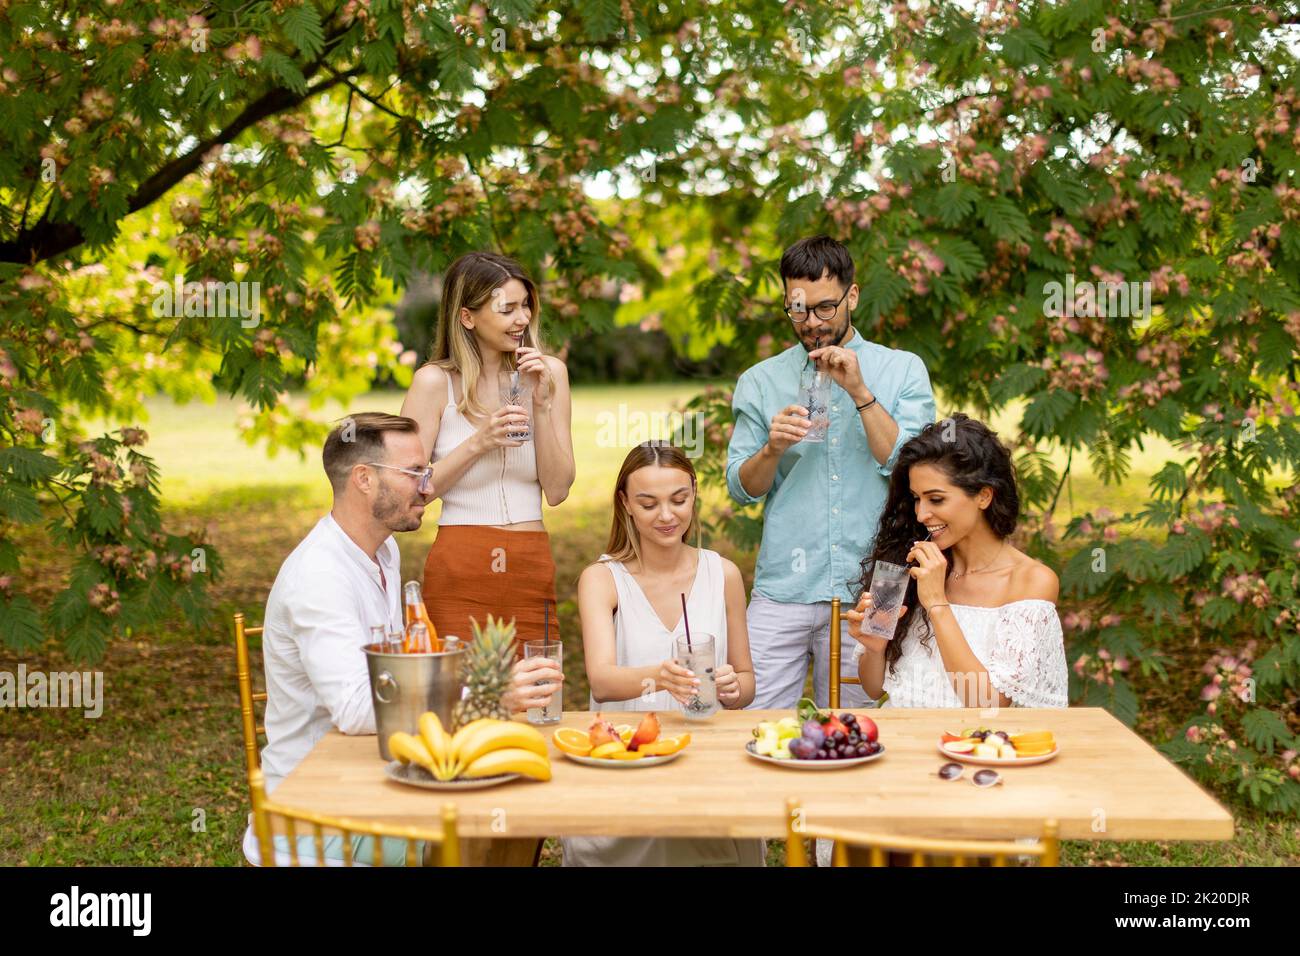 Grupo de jóvenes alegrando con limonada fresca y comiendo frutas en el jardín Foto de stock